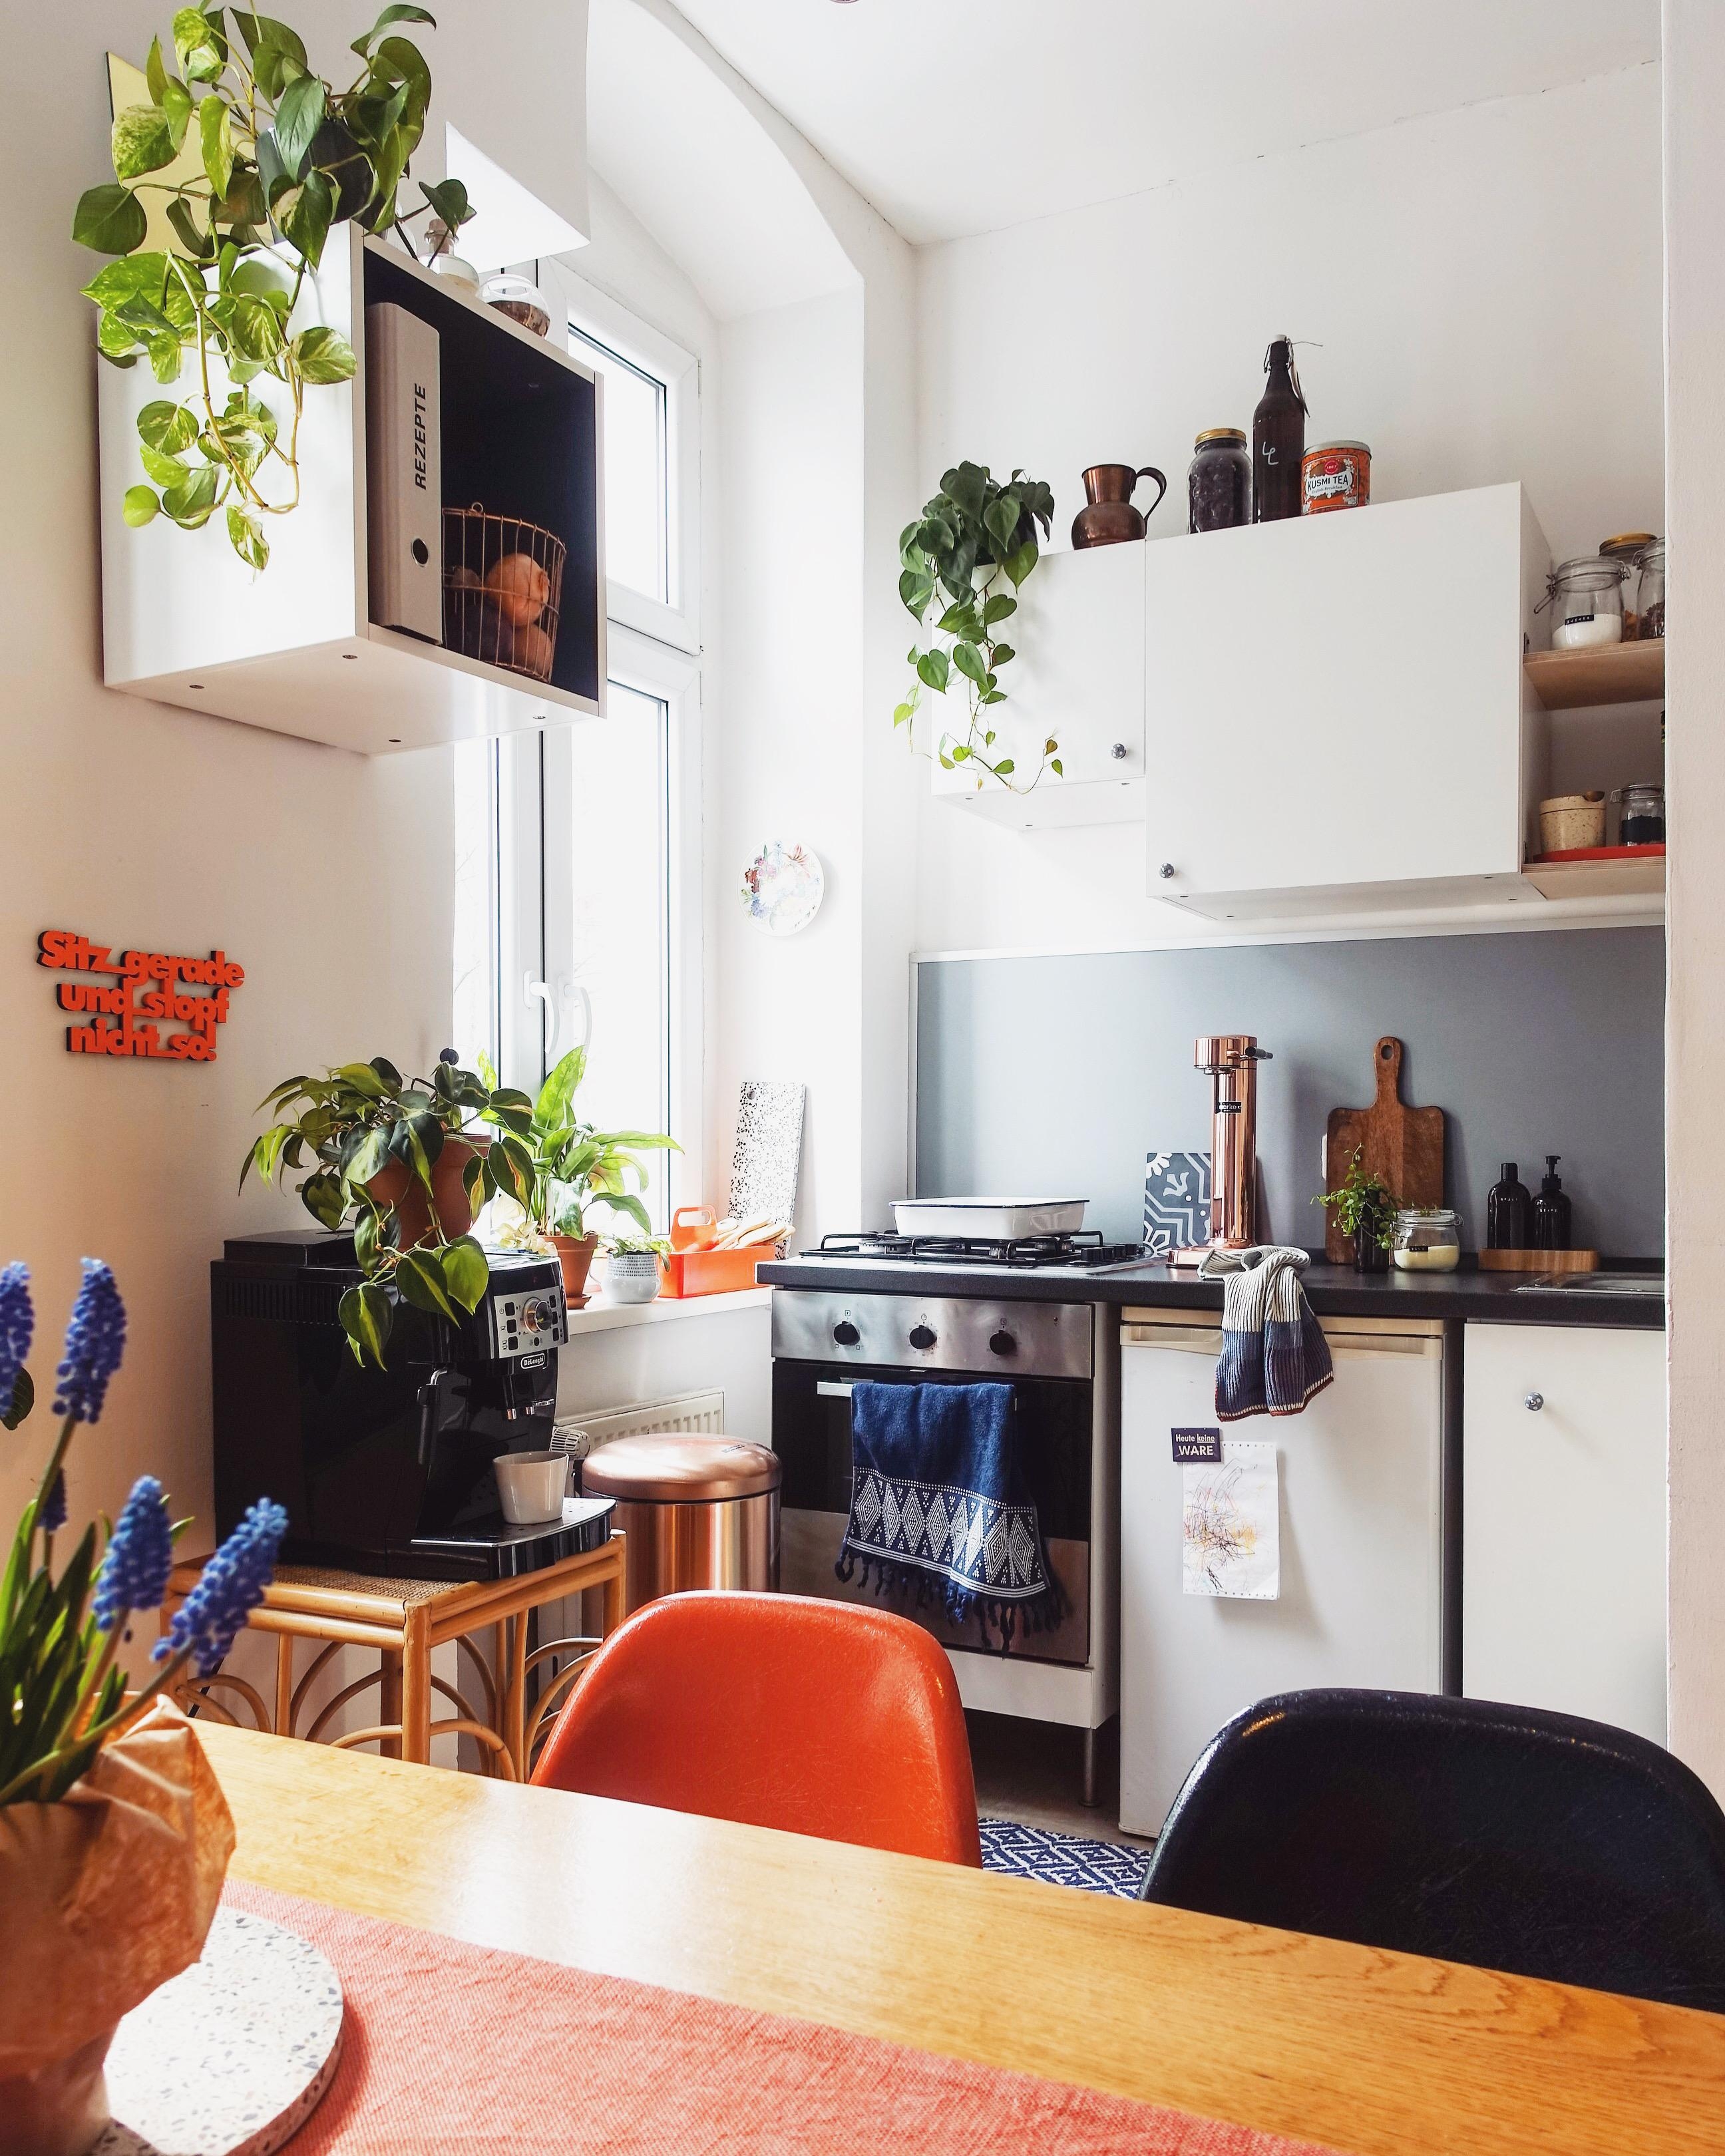 Wann kommt endlich die selbstkochende Küche auf den Markt? 
#kleineküche #küchenliebe #colorful #plantlover #interiors